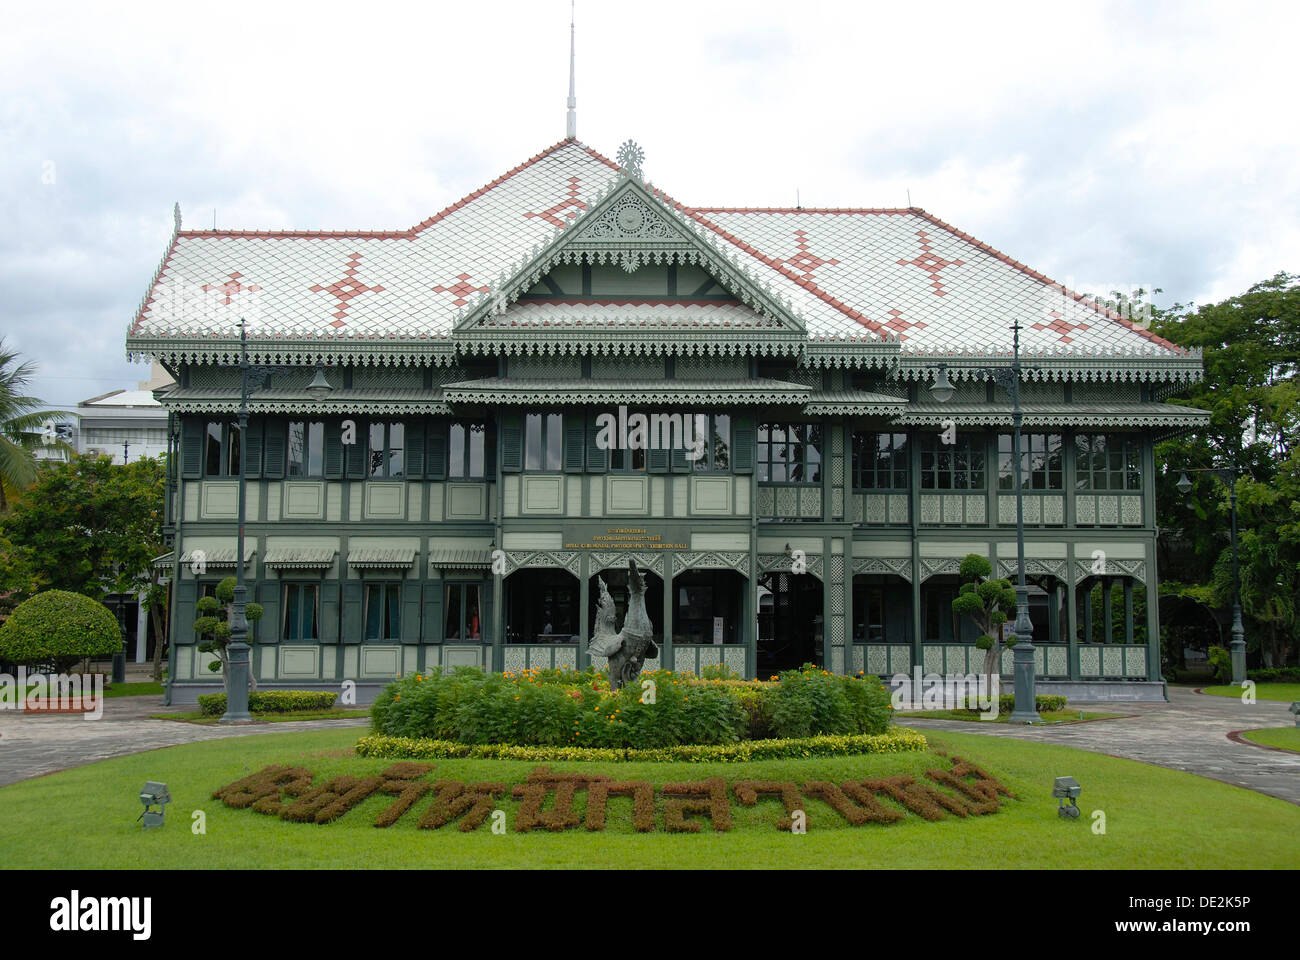 History, historic wooden royal buildings, Suan Hong Residence, Vimanmek Palace, Phra Ratchawang Dusit, Bangkok, Thailand Stock Photo